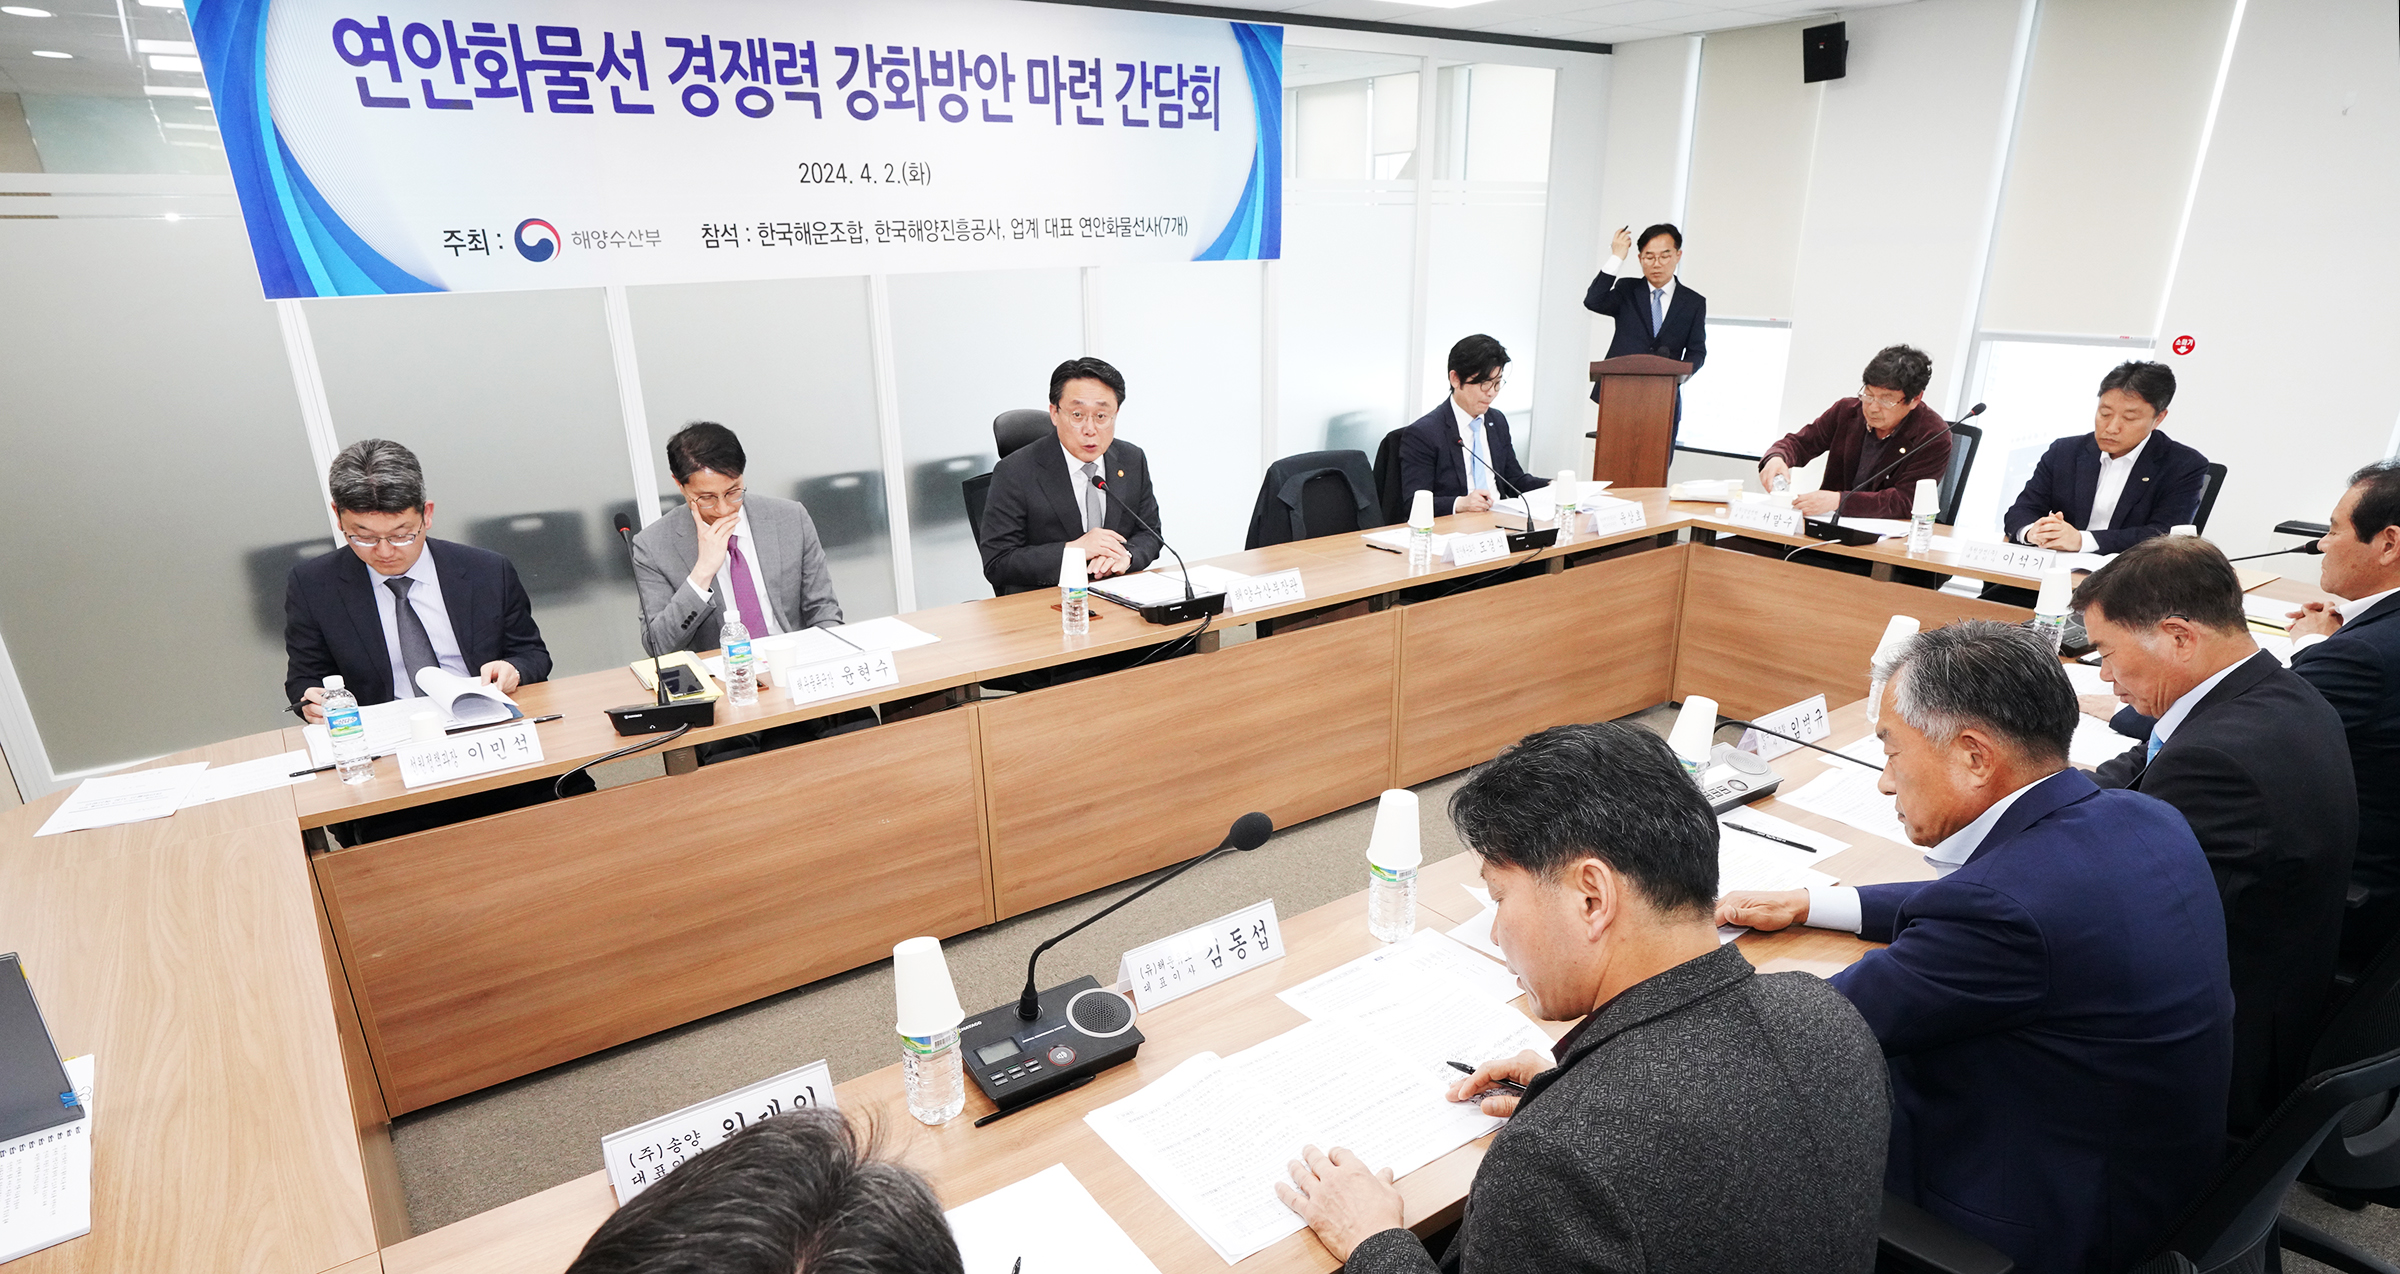 연안화물선 업계·관계기관 간담회 개최(24